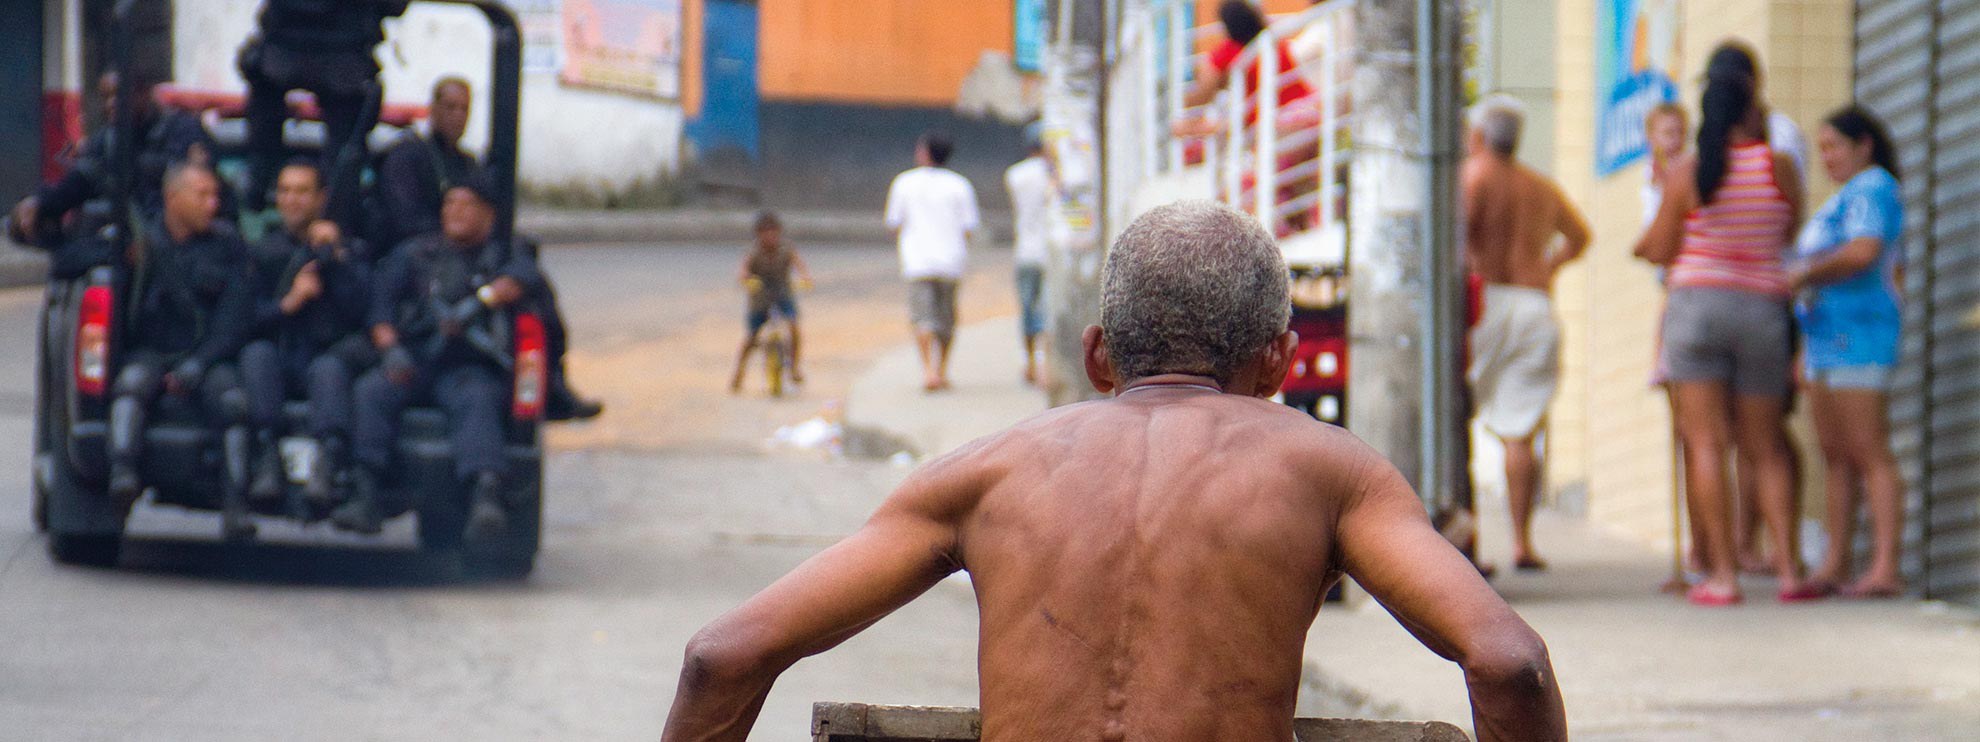 La favela Rocinha, à Rio de Janeiro, Brésil © Luiz Baltar/Amnesty International